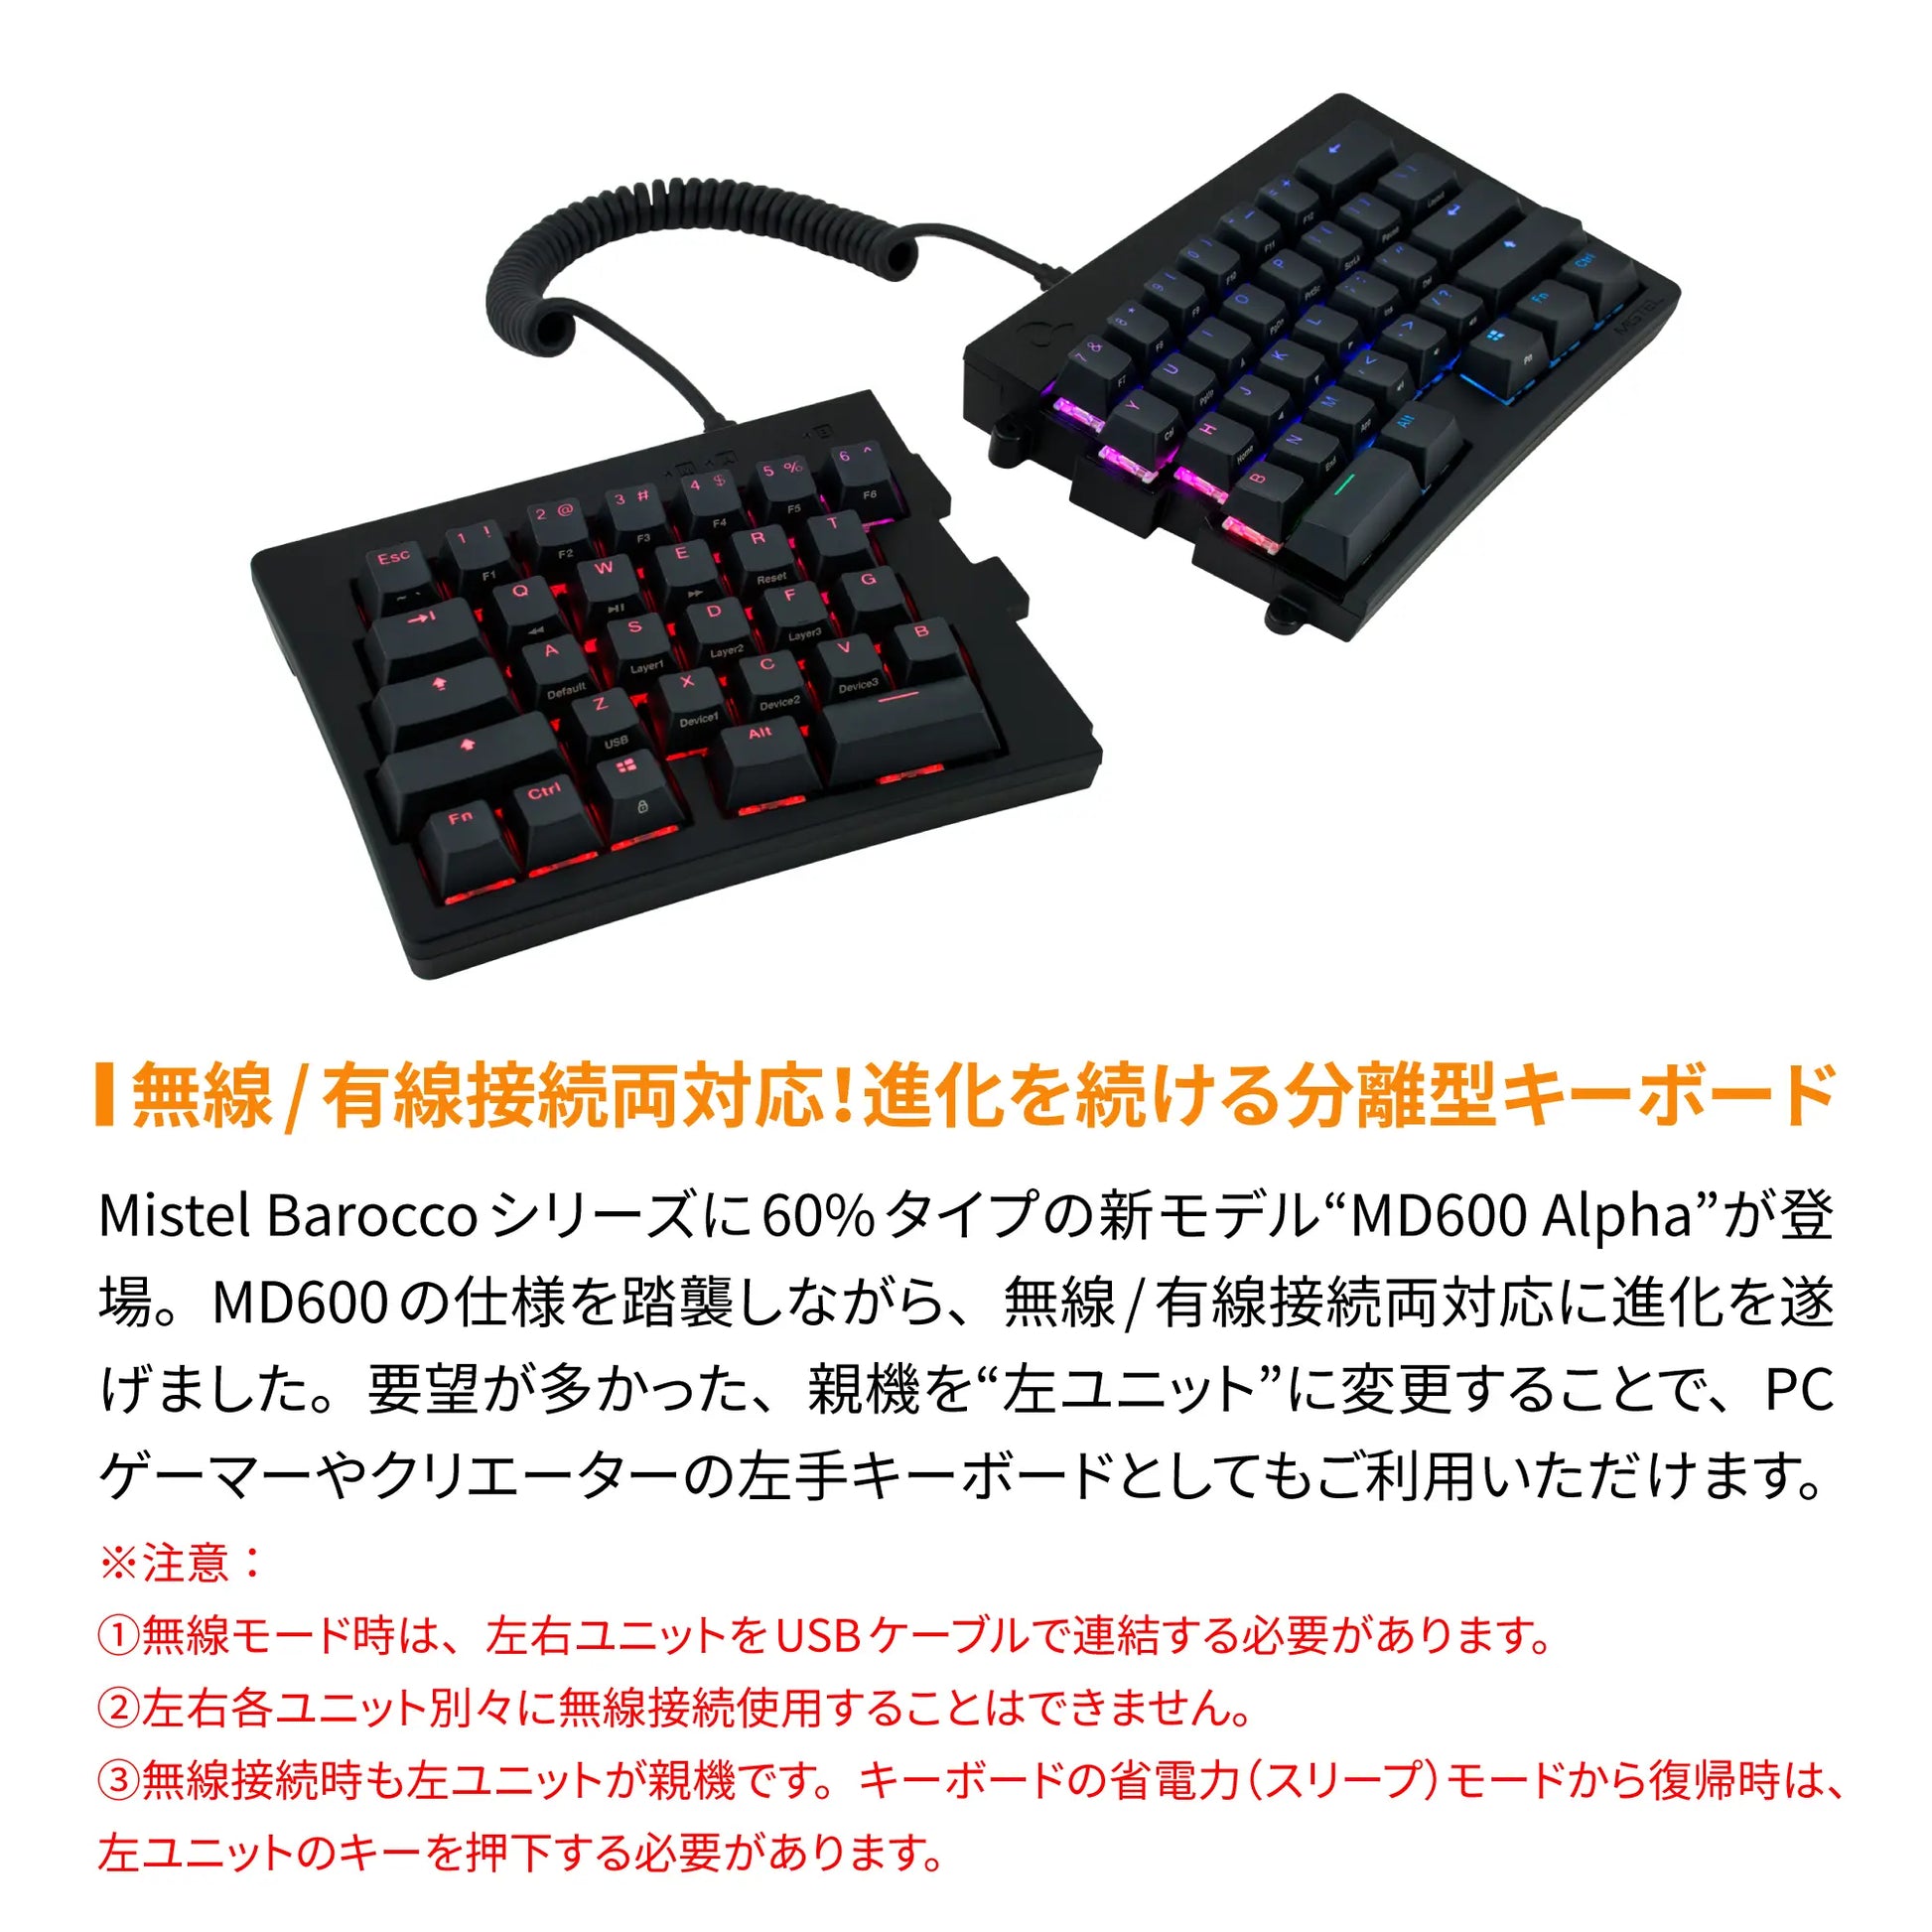 Mistel キーボード BAROCCO MD600 Alpha BT RGB - 英語配列